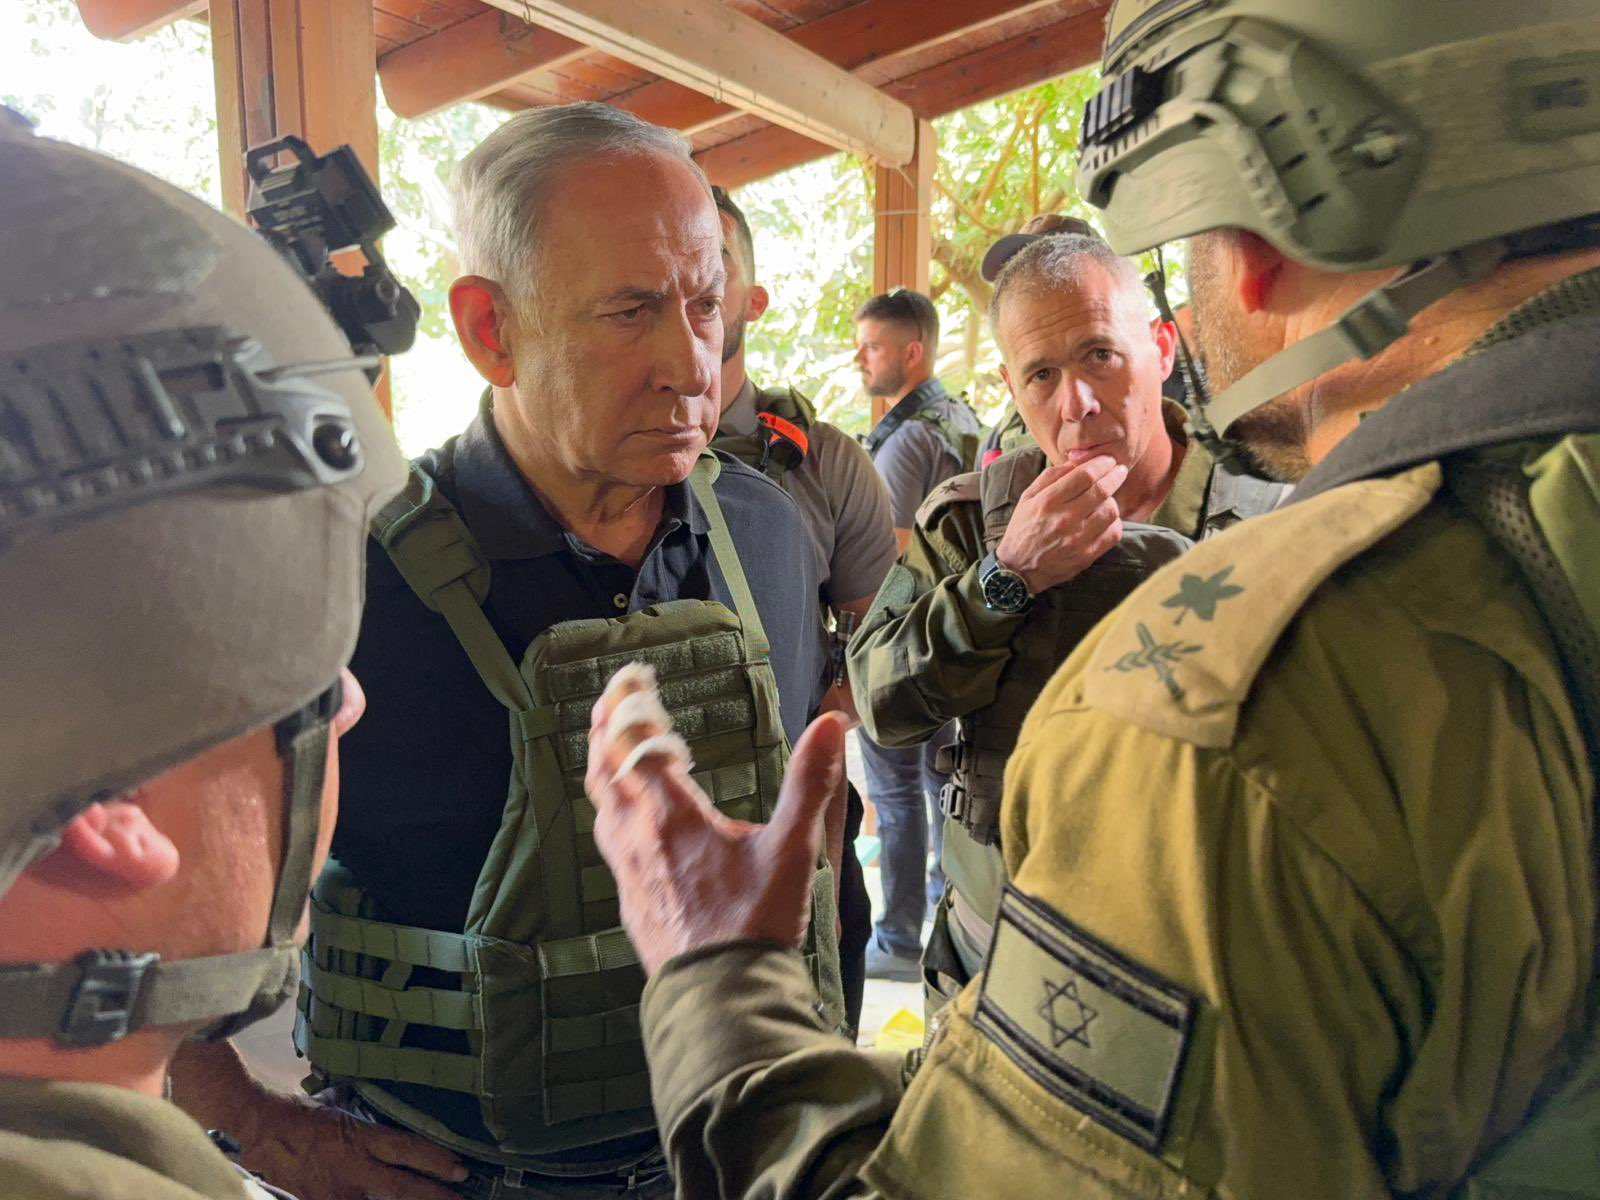 Netanyahu arenga l'exèrcit a les portes de Gaza en acabar l'ultimàtum: "Estem llestos per a la següent fase"